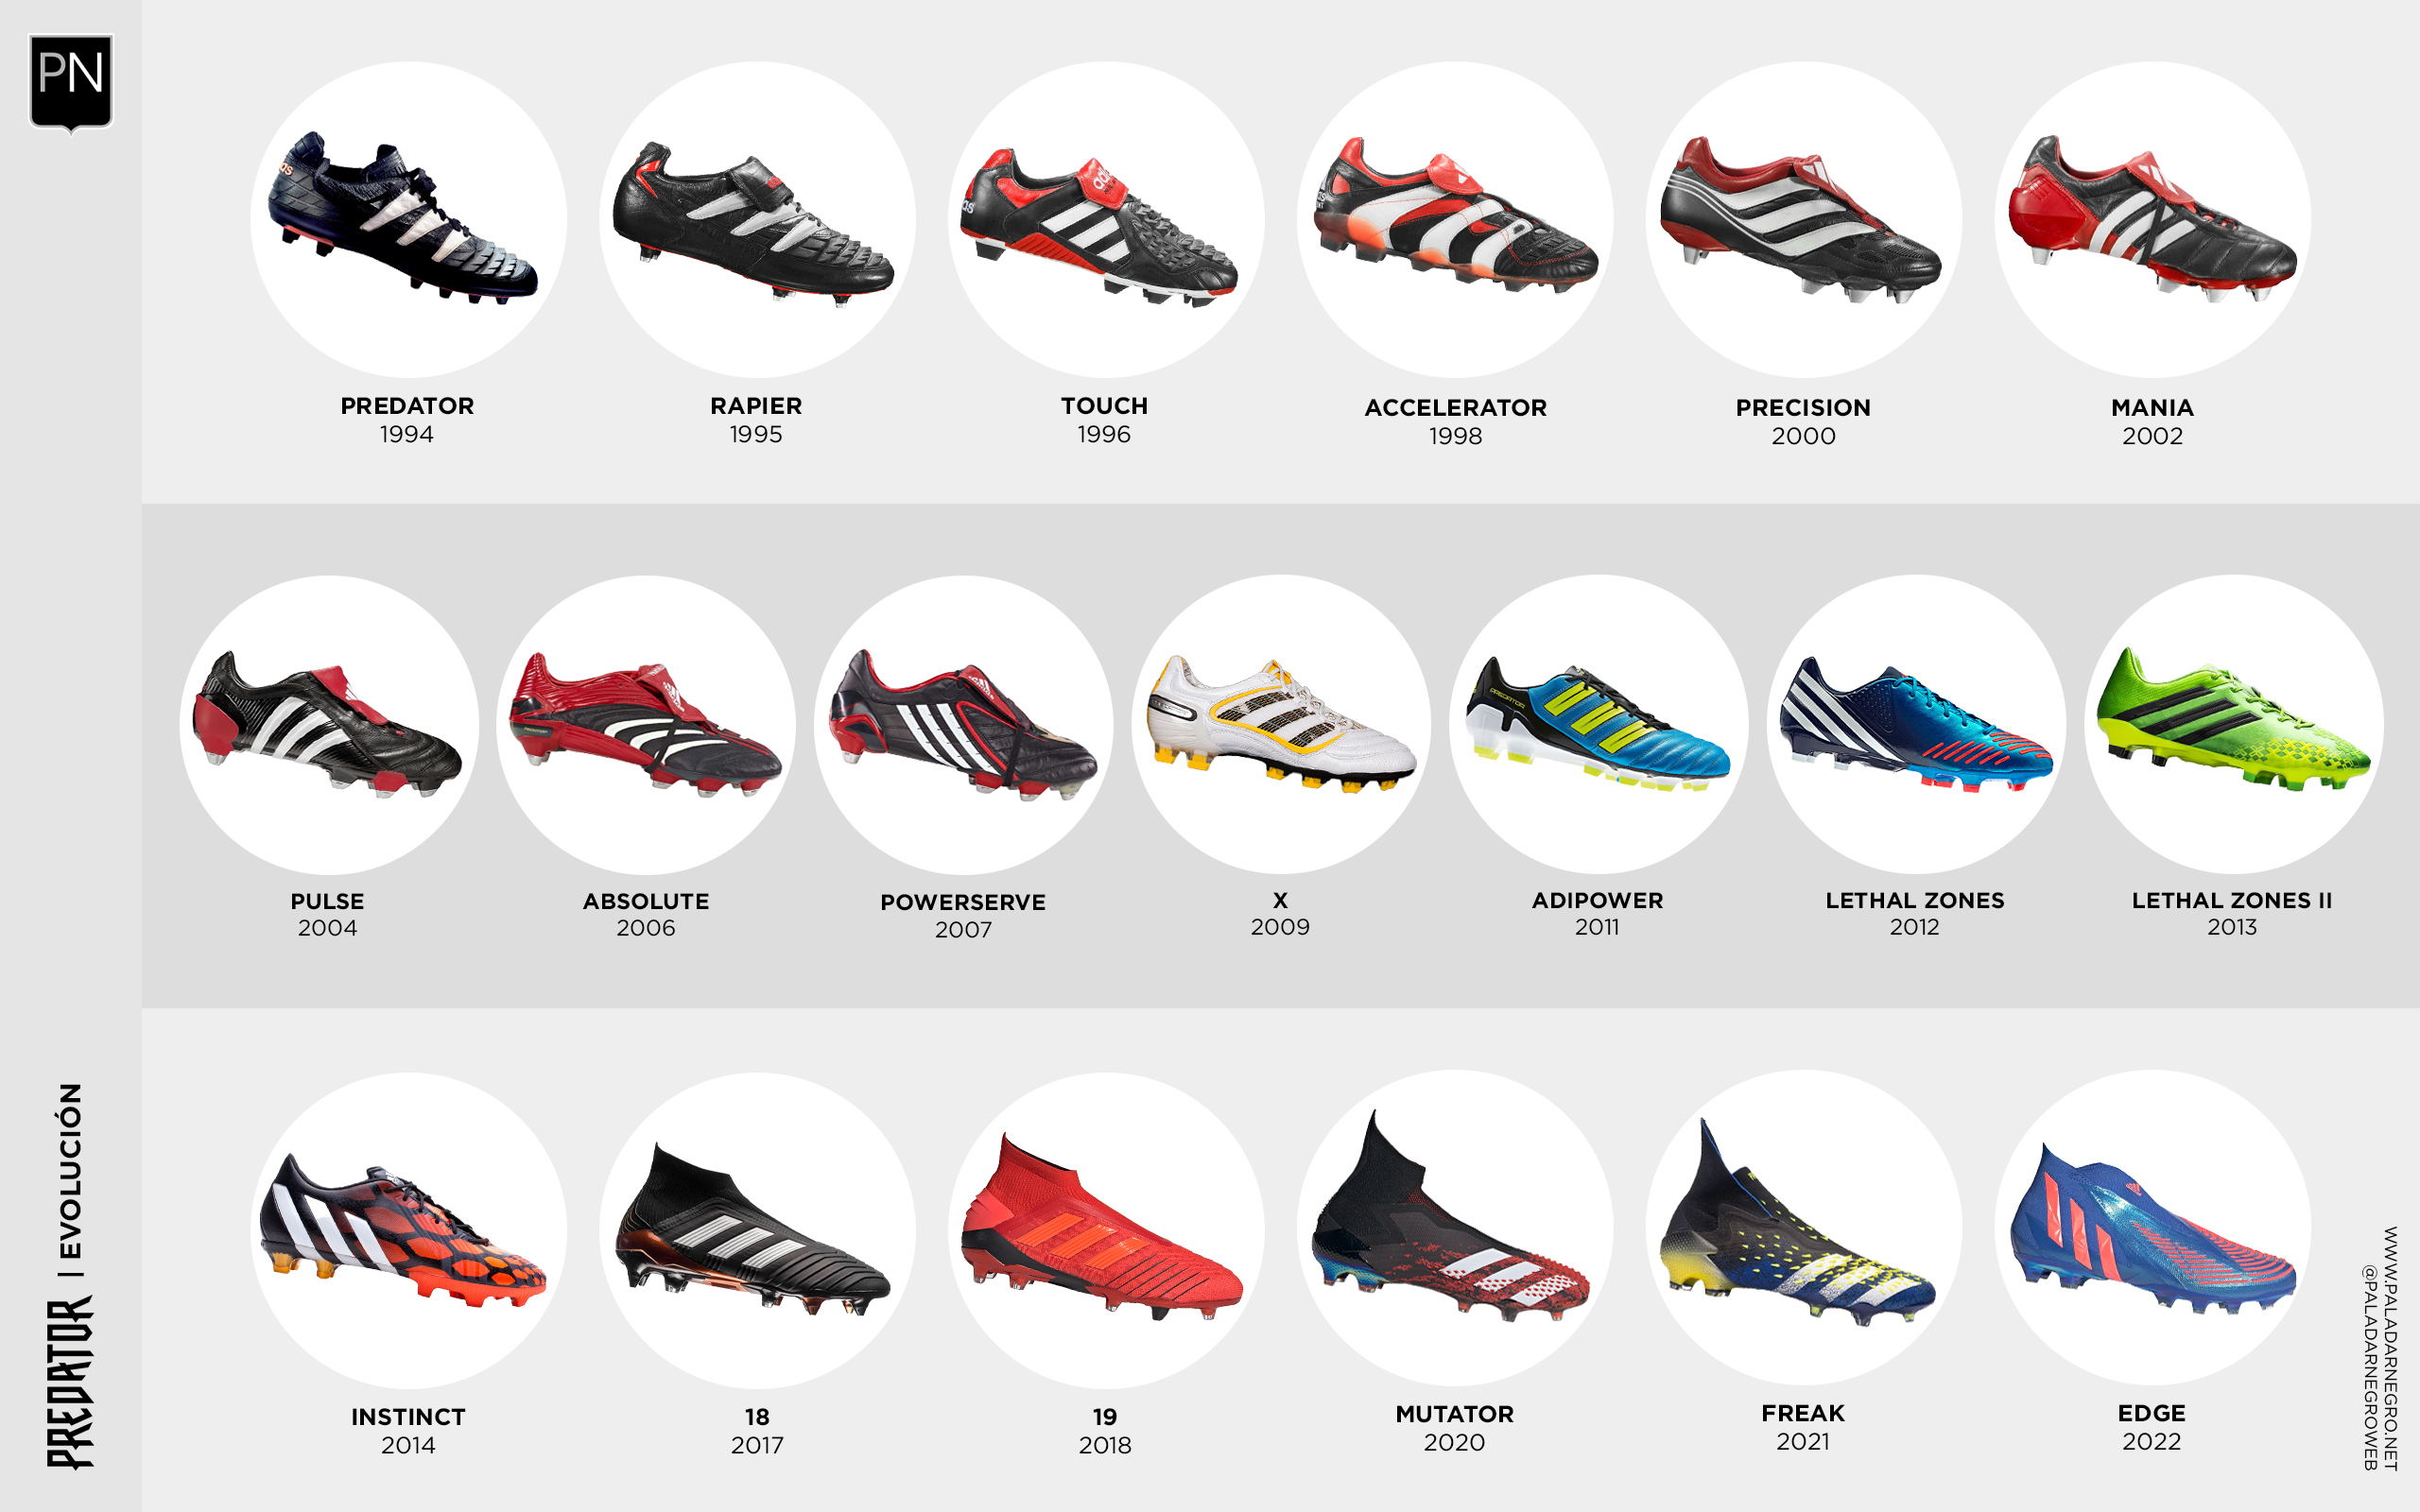 Paladar Negro Twitter: "adidas Predator | La evolución de uno de los botines de fútbol icónicos ¿Cuál es tu modelo preferido? https://t.co/bxeBPaSOkt" / Twitter